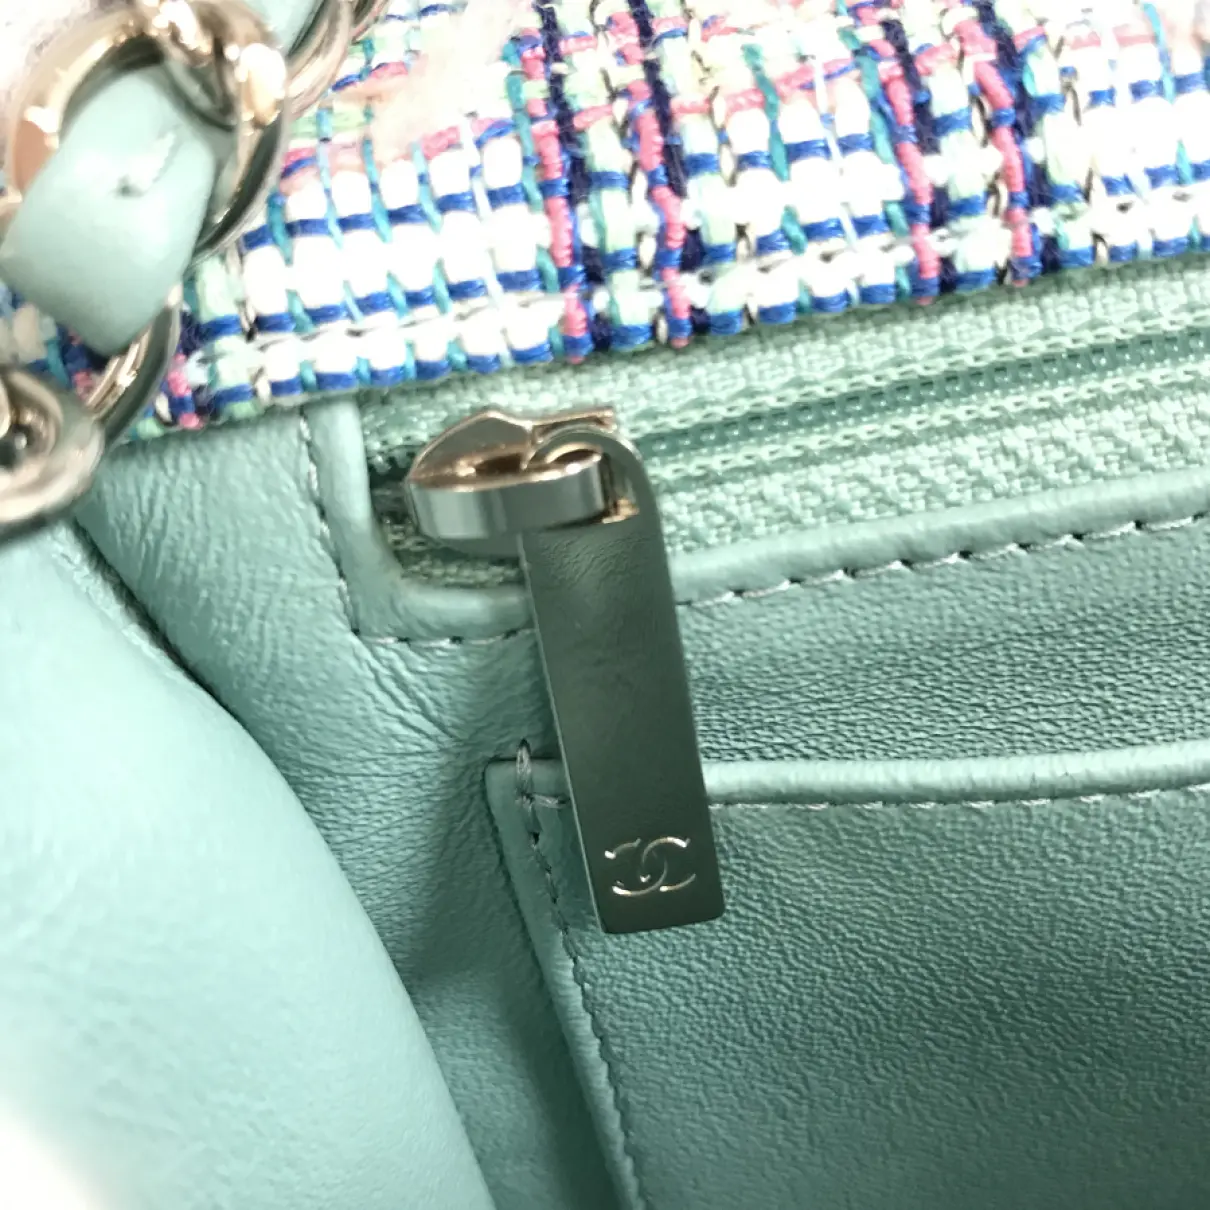 Timeless/Classique cloth handbag Chanel